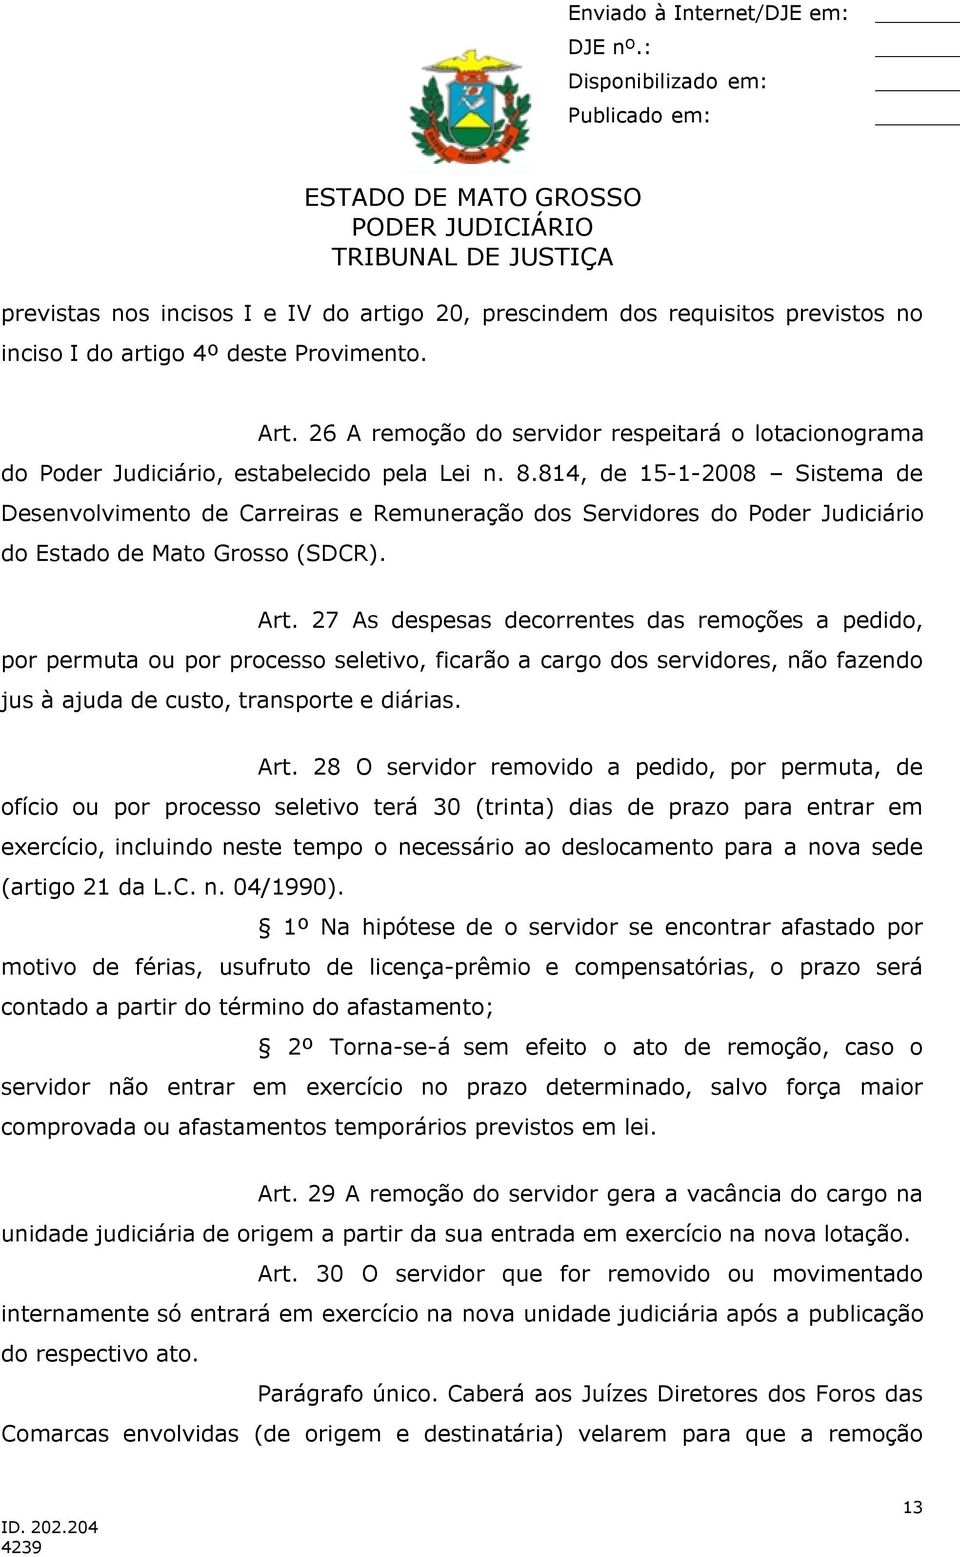 814, de 15-1-2008 Sistema de Desenvolvimento de Carreiras e Remuneração dos Servidores do Poder Judiciário do Estado de Mato Grosso (SDCR). Art.